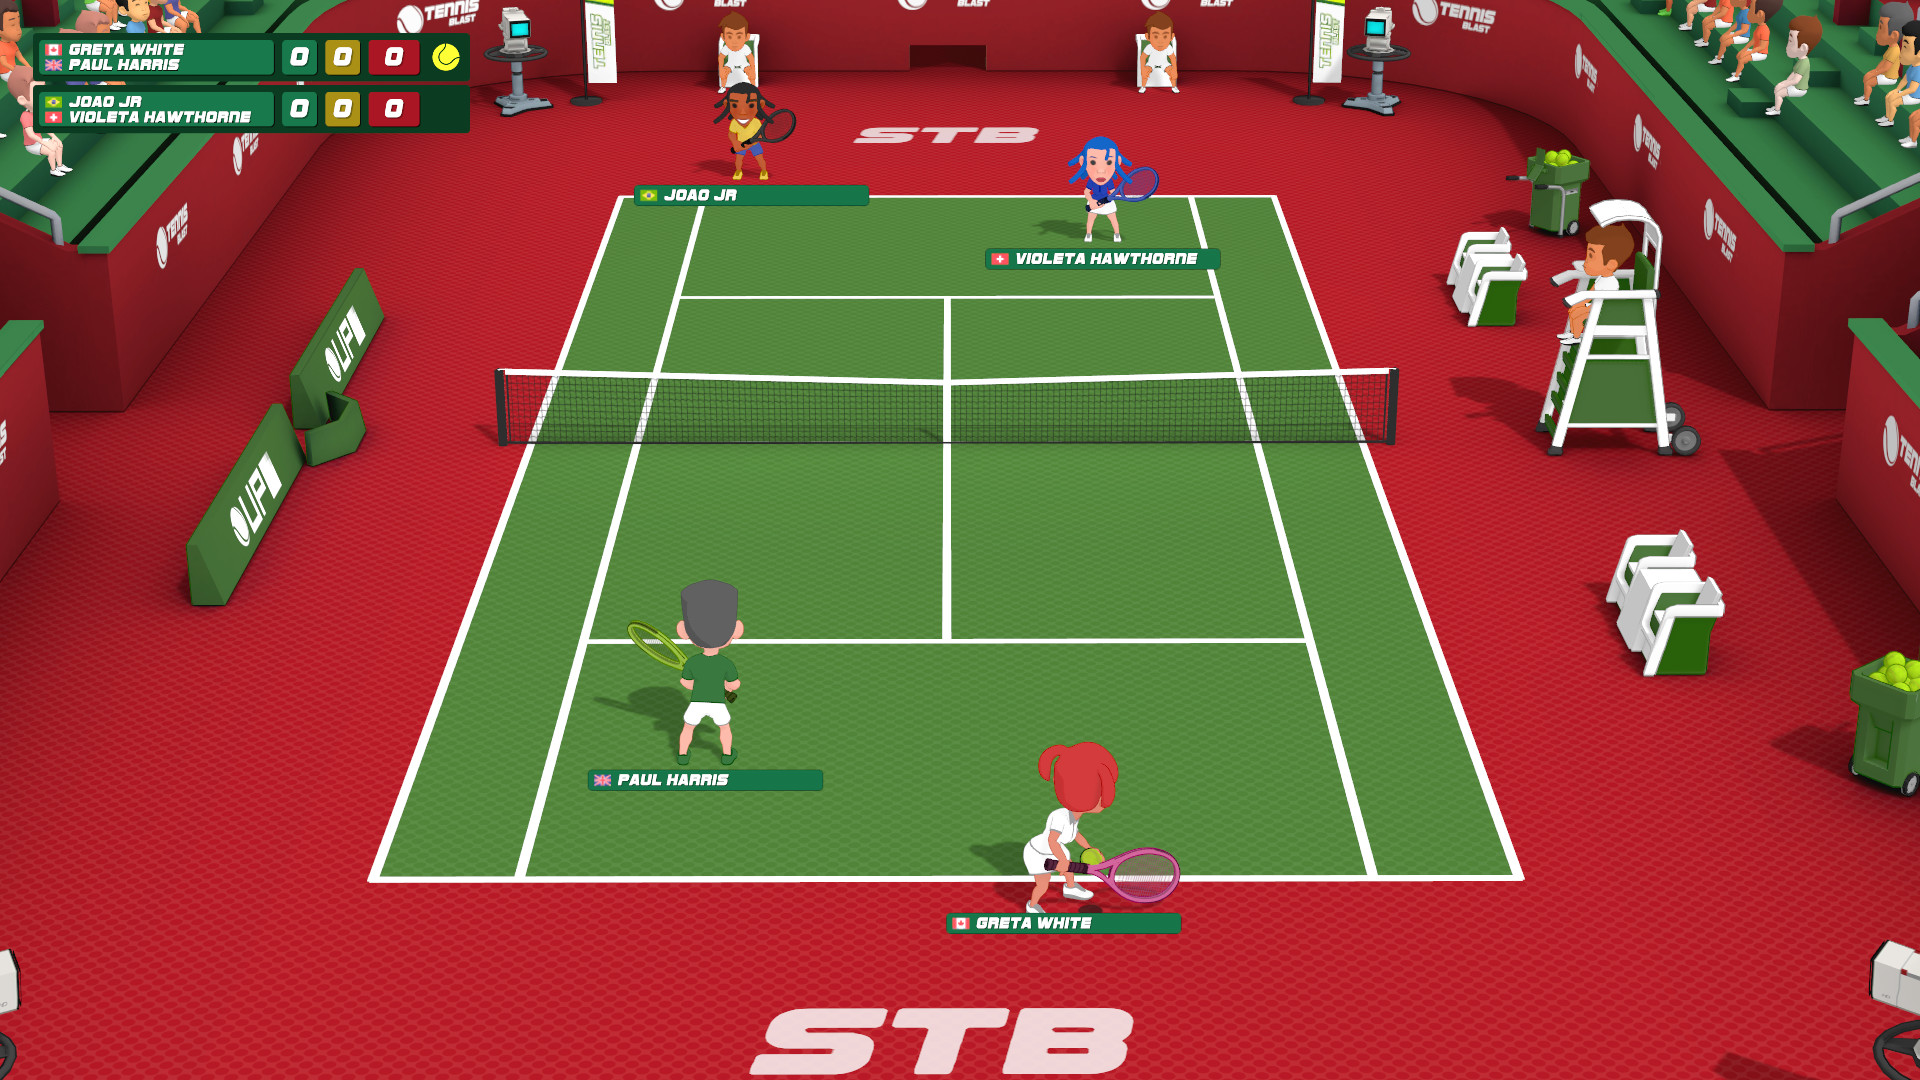 Super Tennis Blast Free Download